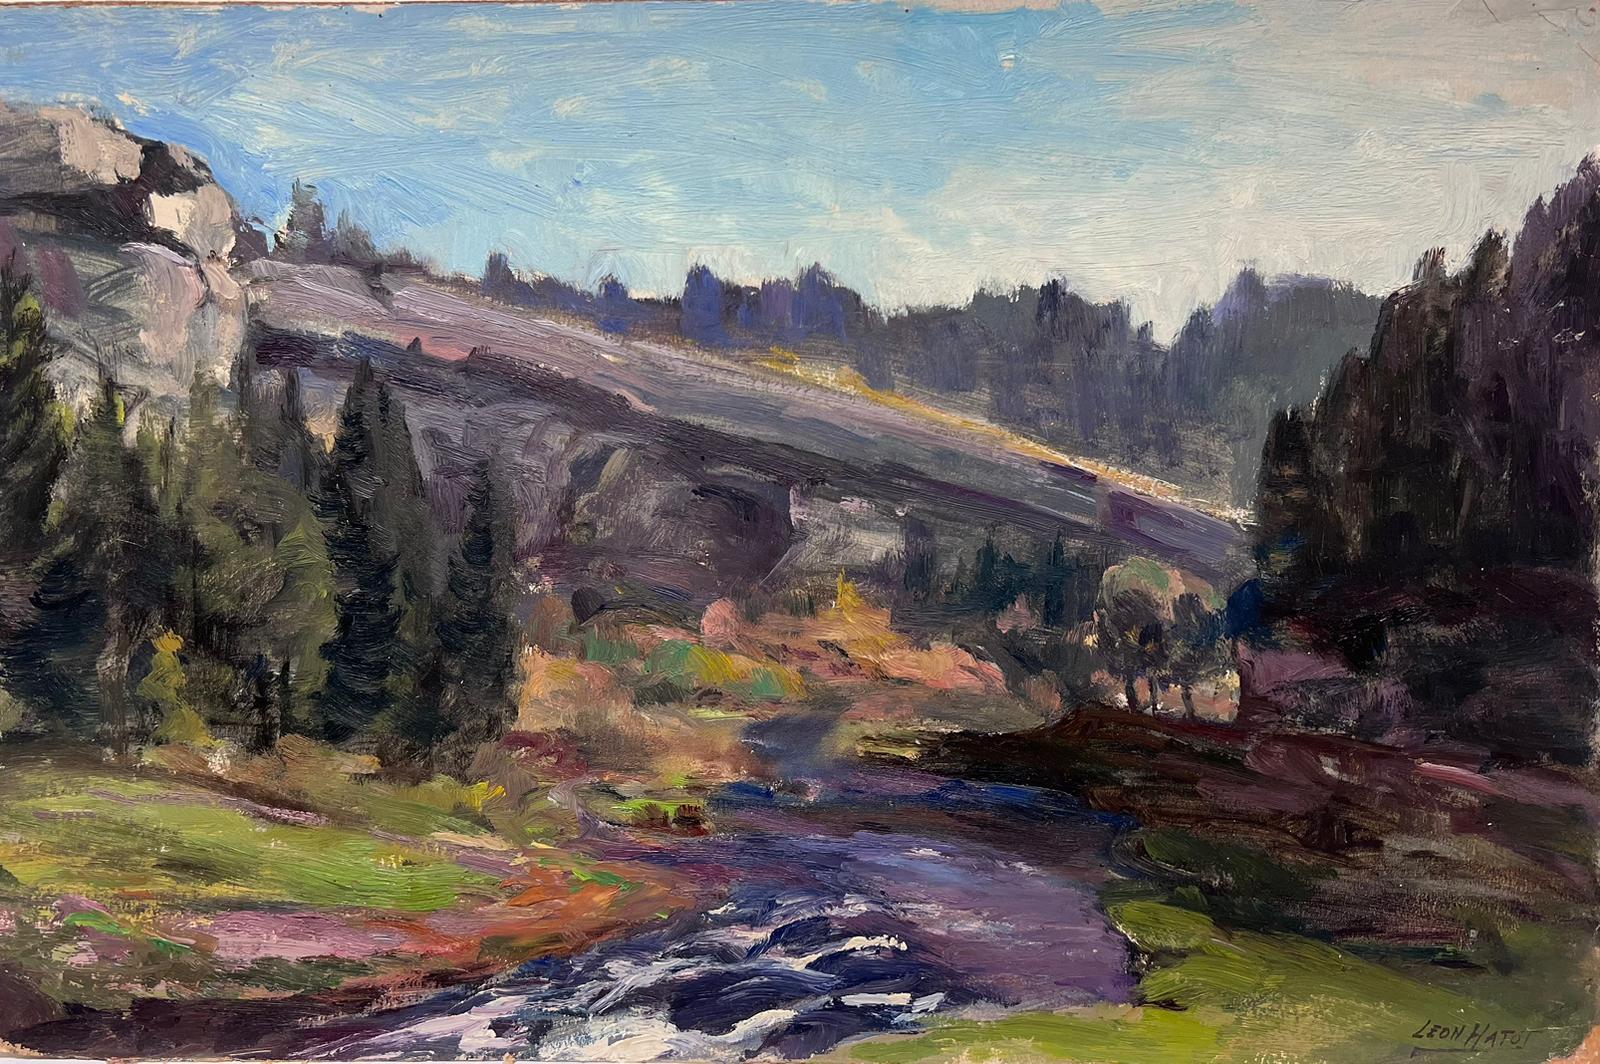 Landscape Painting Leon Hatot - Peinture à l'huile française vintage Paysage des montagnes Rocheuses avec rivière violette